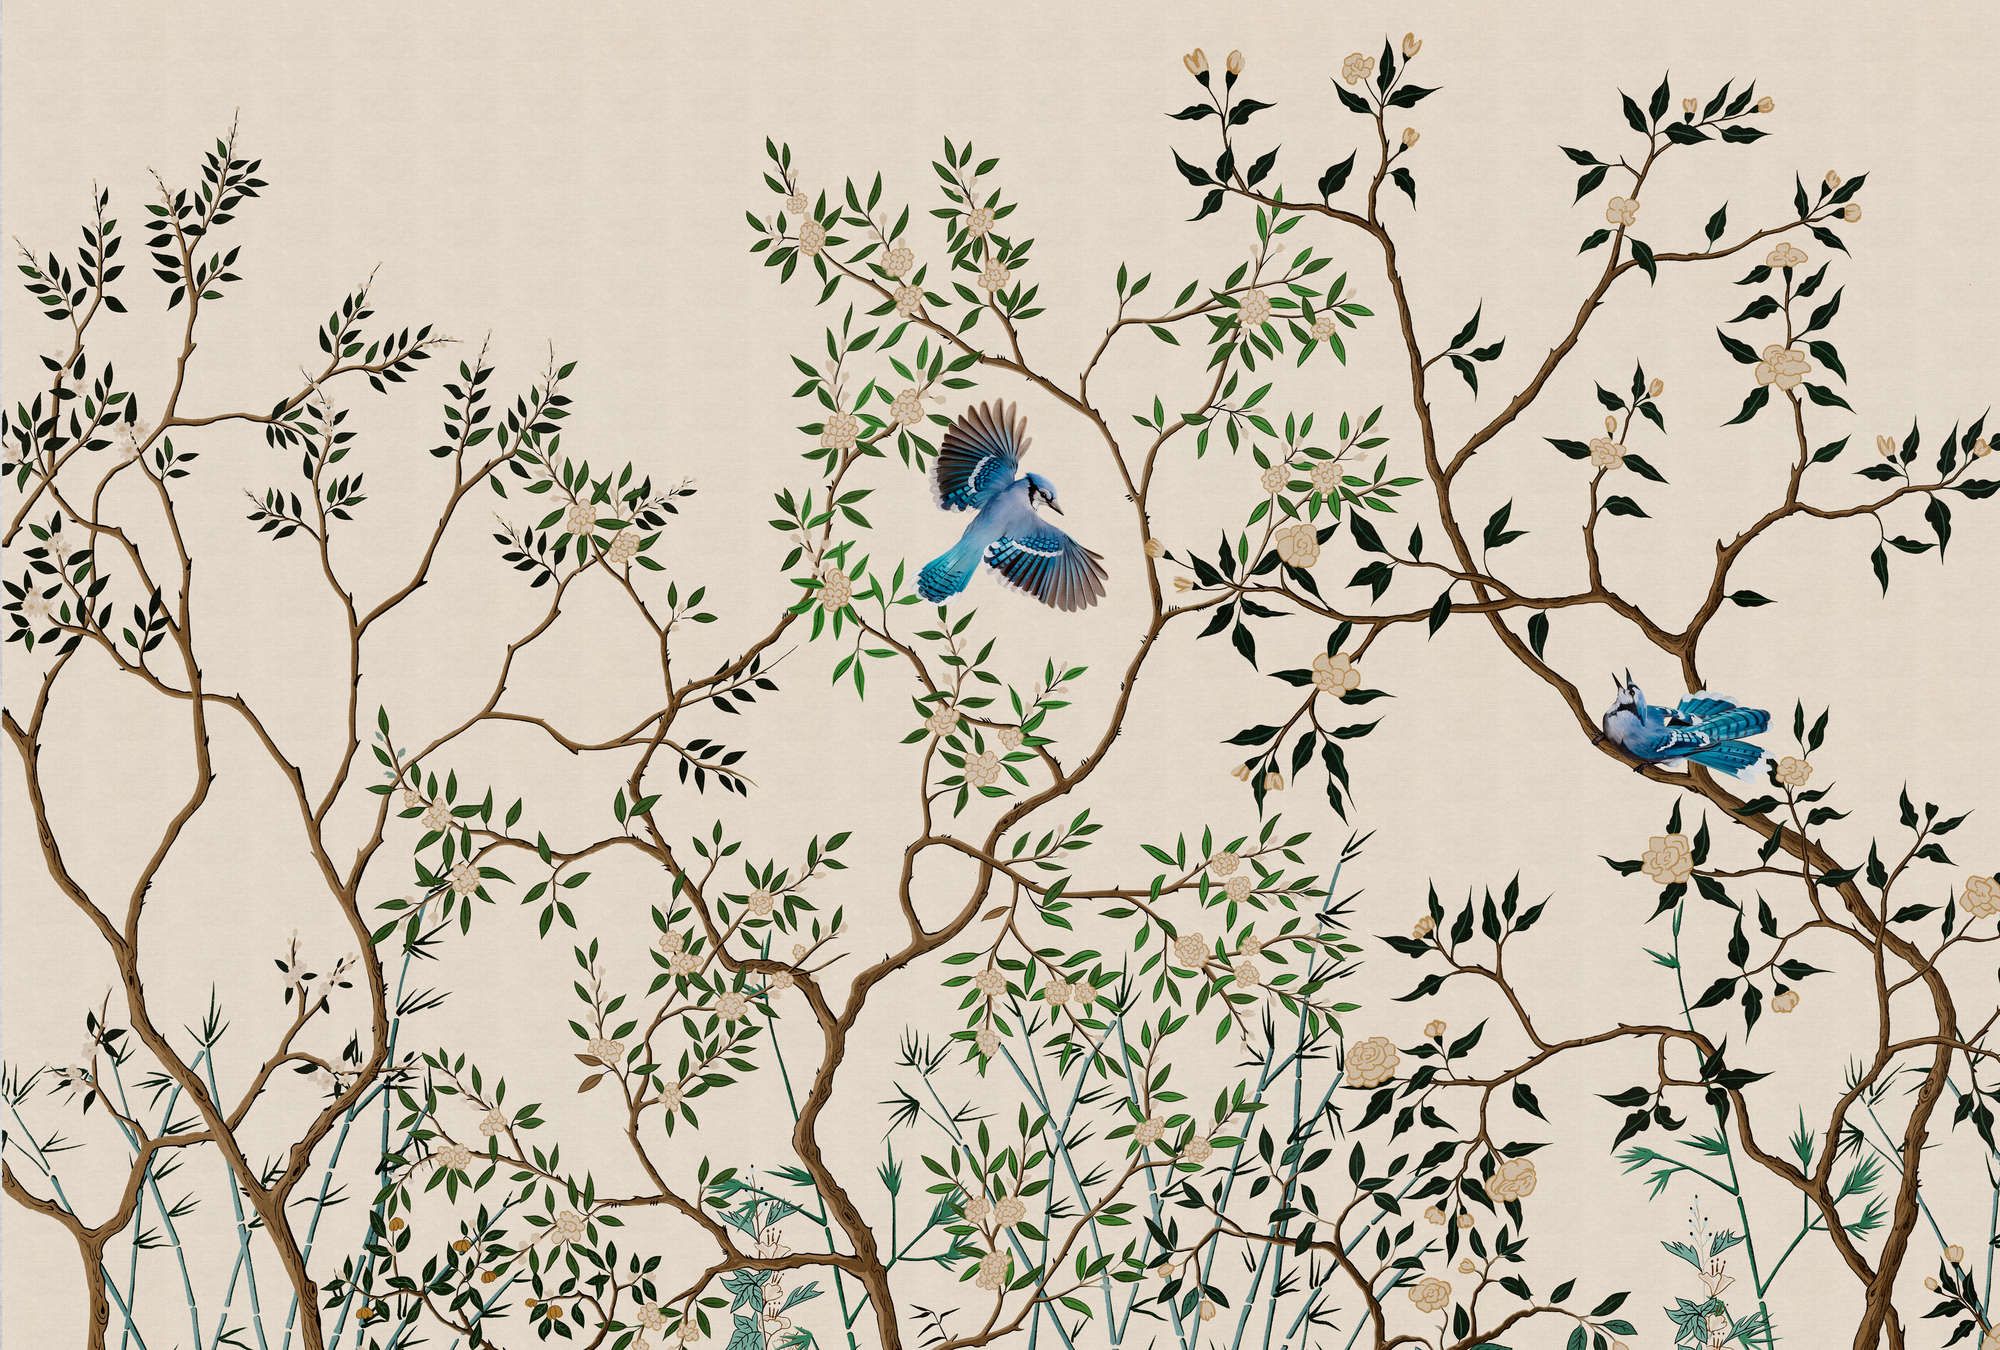             Fotomural »merula« - ramas y pájaros - ligero con textura de lino | Material sin tejer liso, ligeramente nacarado
        